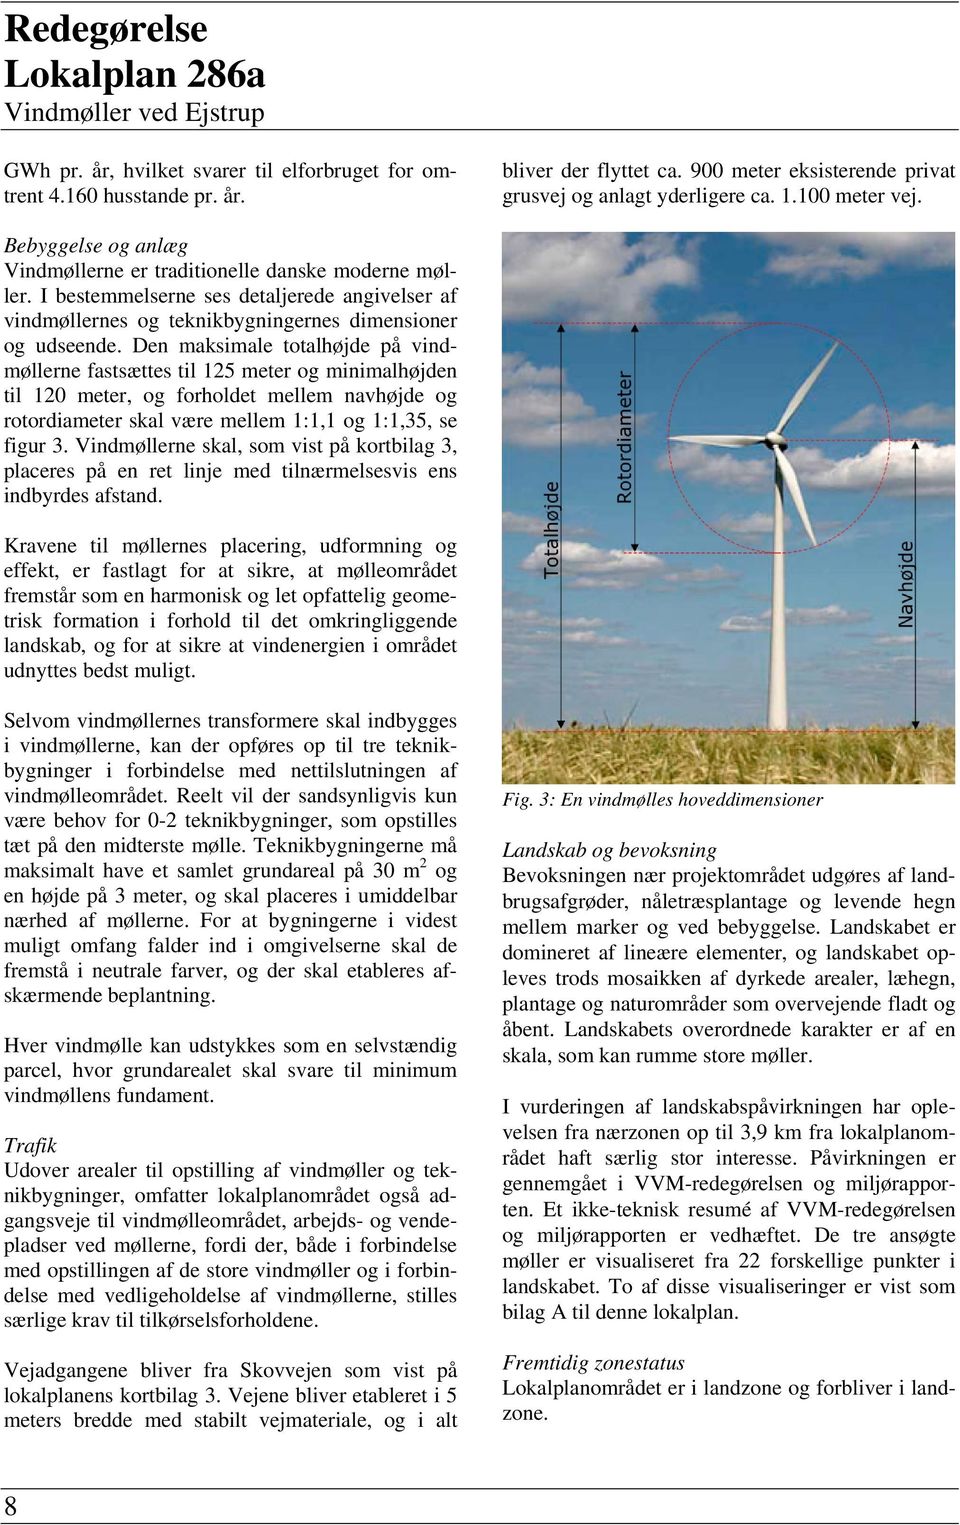 I bestemmelserne ses detaljerede angivelser af vindmøllernes og teknikbygningernes dimensioner og udseende.